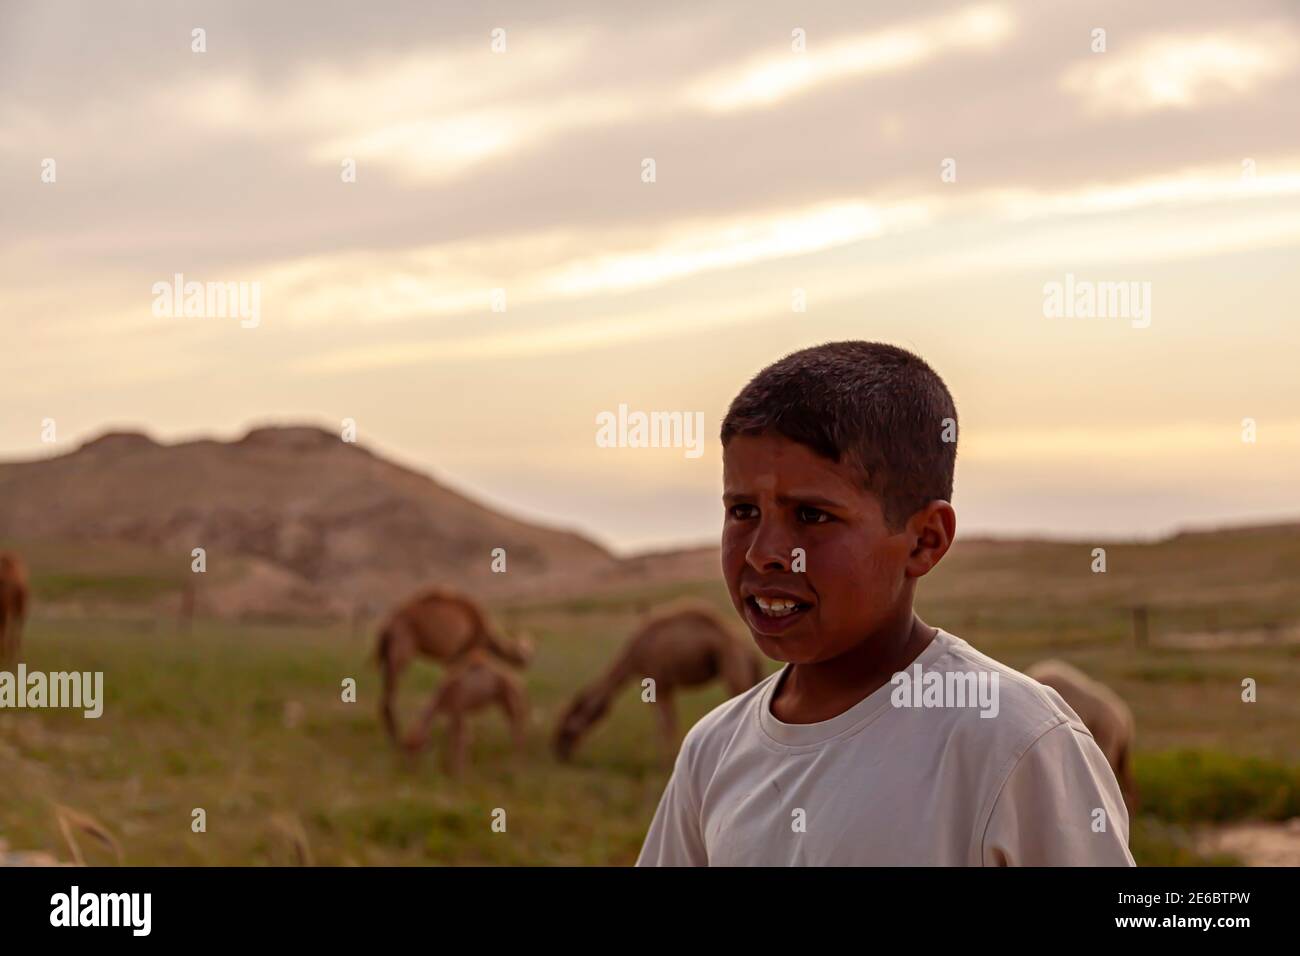 Wadi Musa, Jordan 04.01.2010: Ritratto di un giovane pastore beduino locale, in attesa dei suoi cammelli sulle aride colline giordane. Nella sfocatura Foto Stock